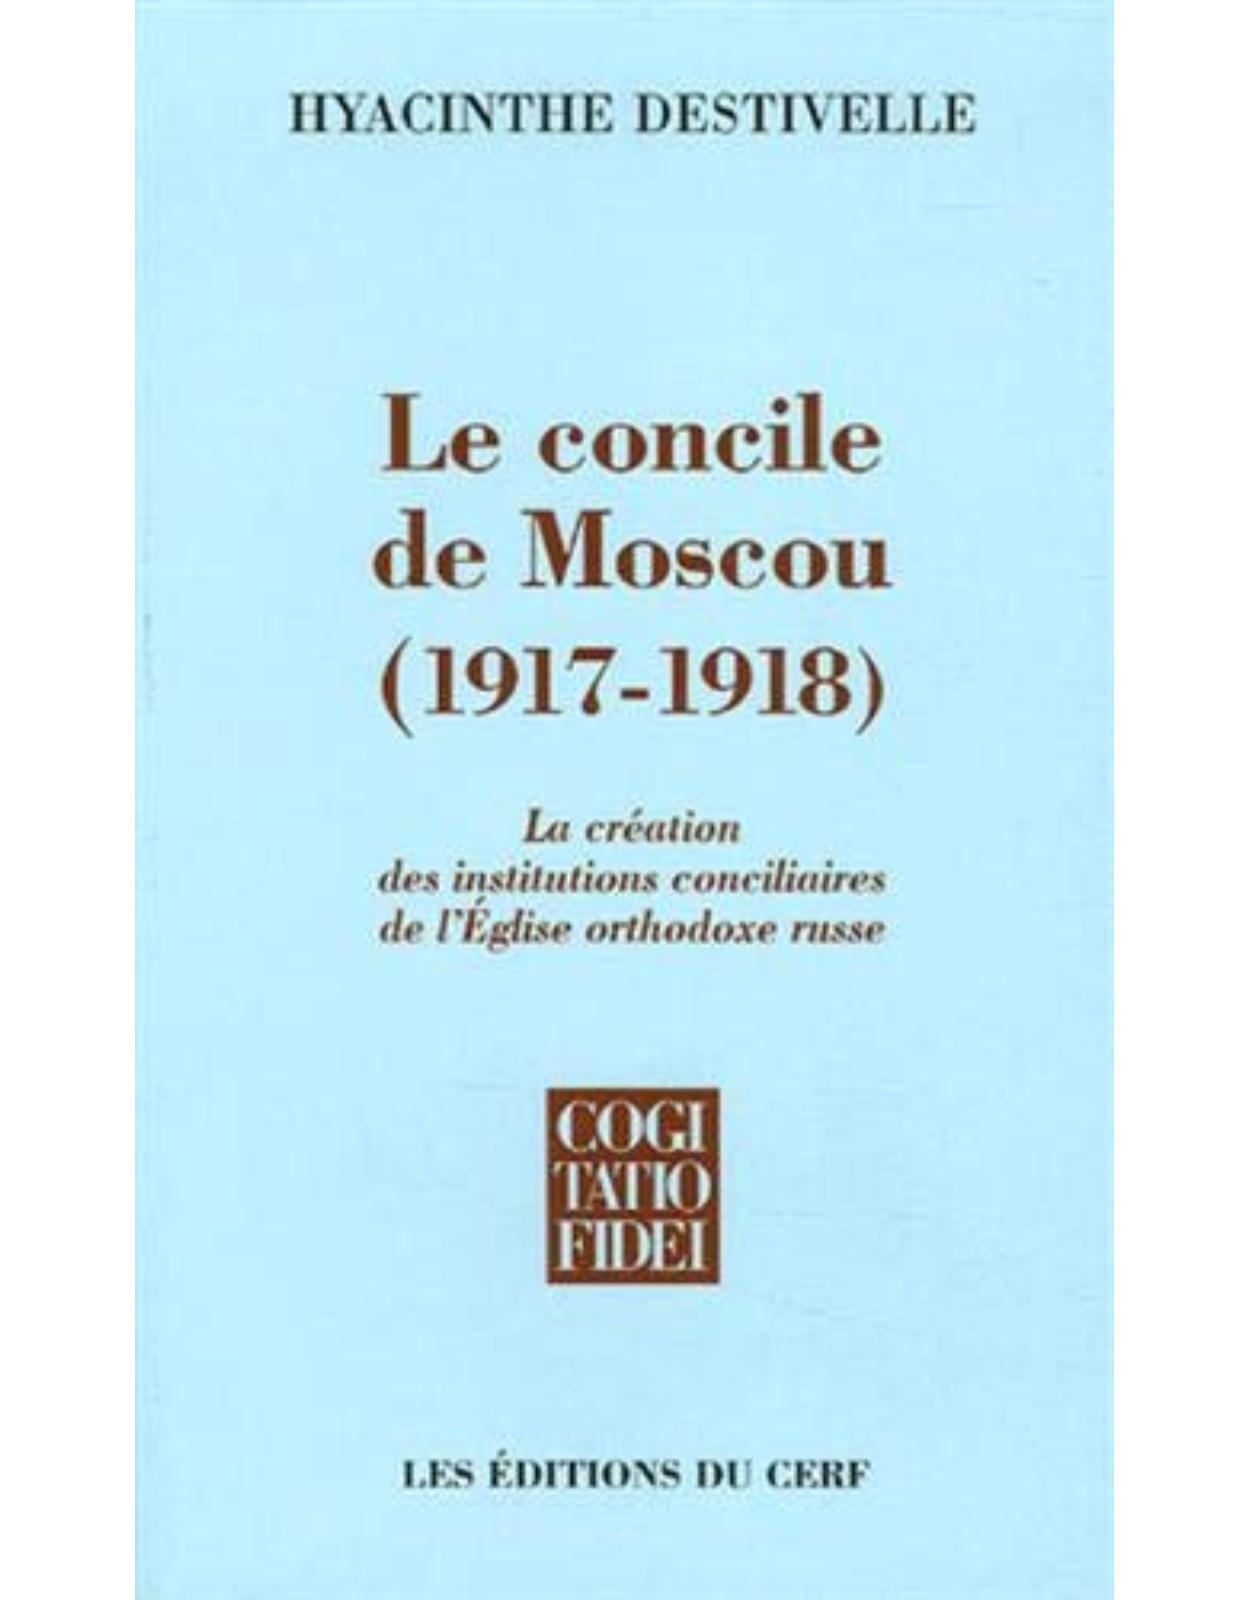 Le Concile de Moscou (1917-1918) : La création des institutions conciliaires de l'Eglise orthodoxe russe